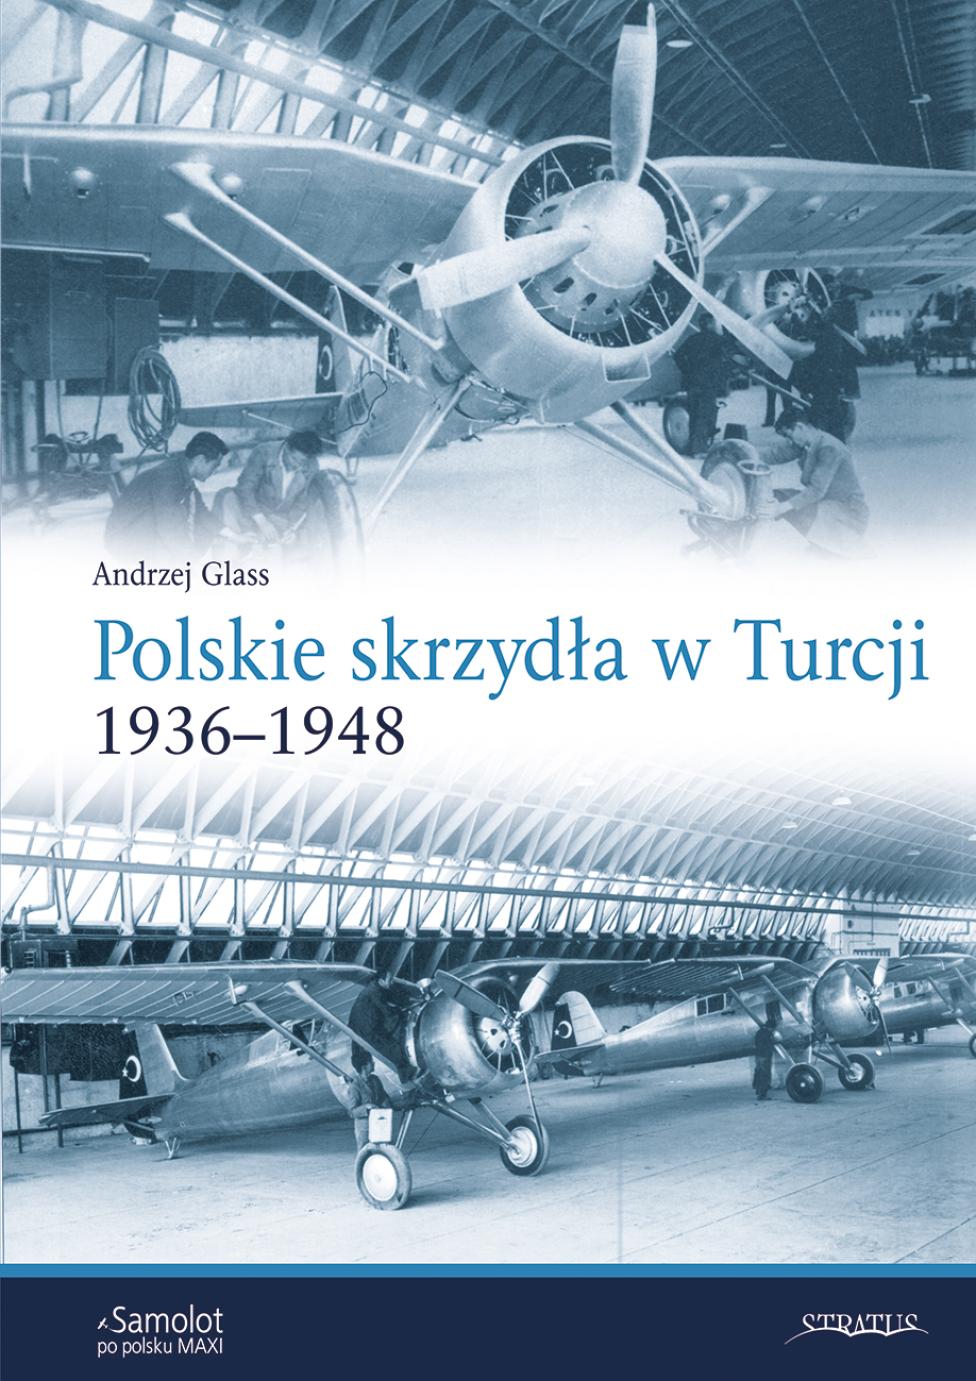 Książka "Polskie Skrzydła w Turcji 1936–1948" (fot. Wydawnictwo Stratus)